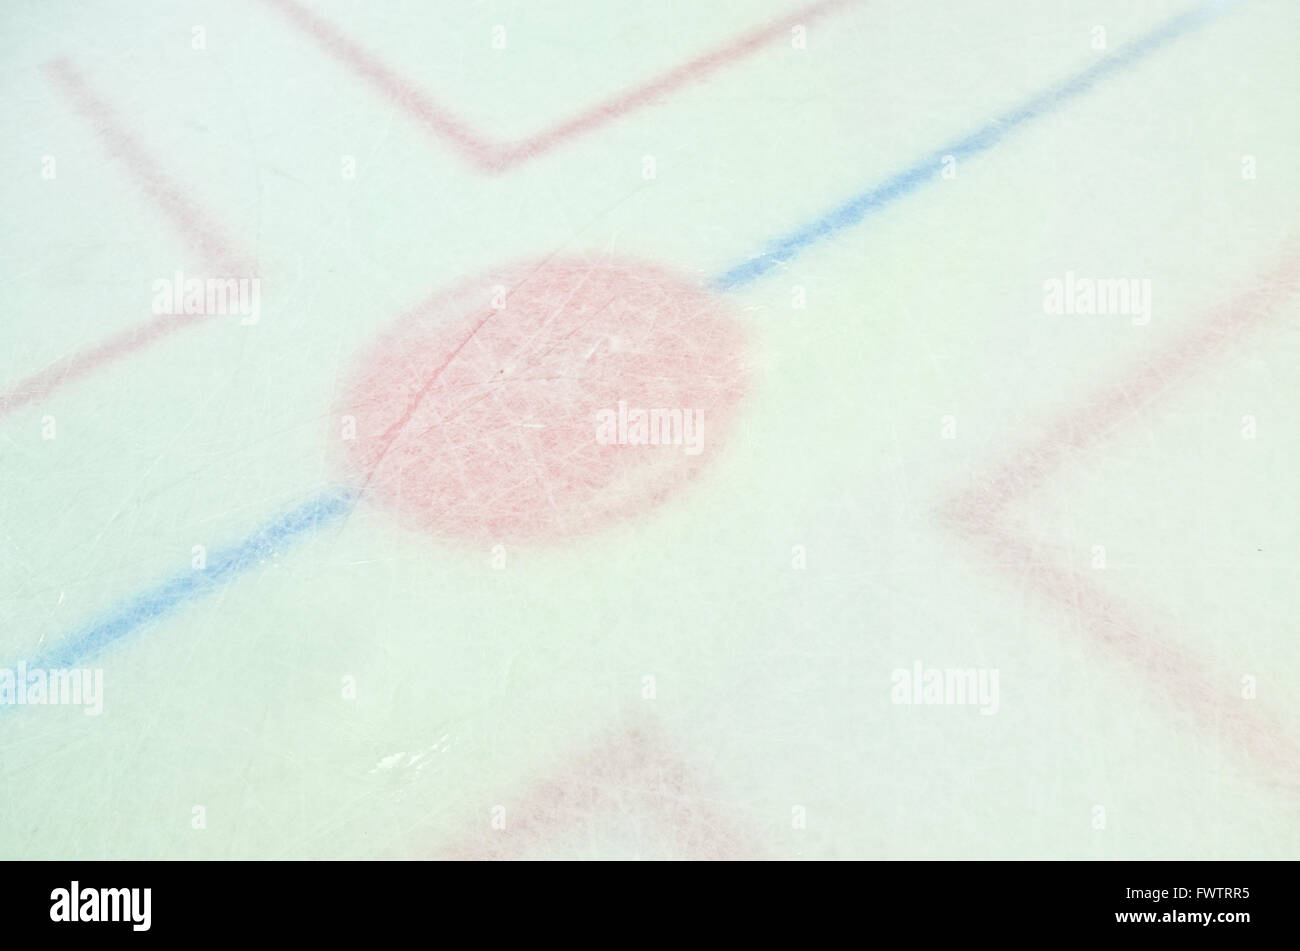 Der Kreis auf dem Eis des Eishockeystadion wo Spieler Faceoff Stockfoto